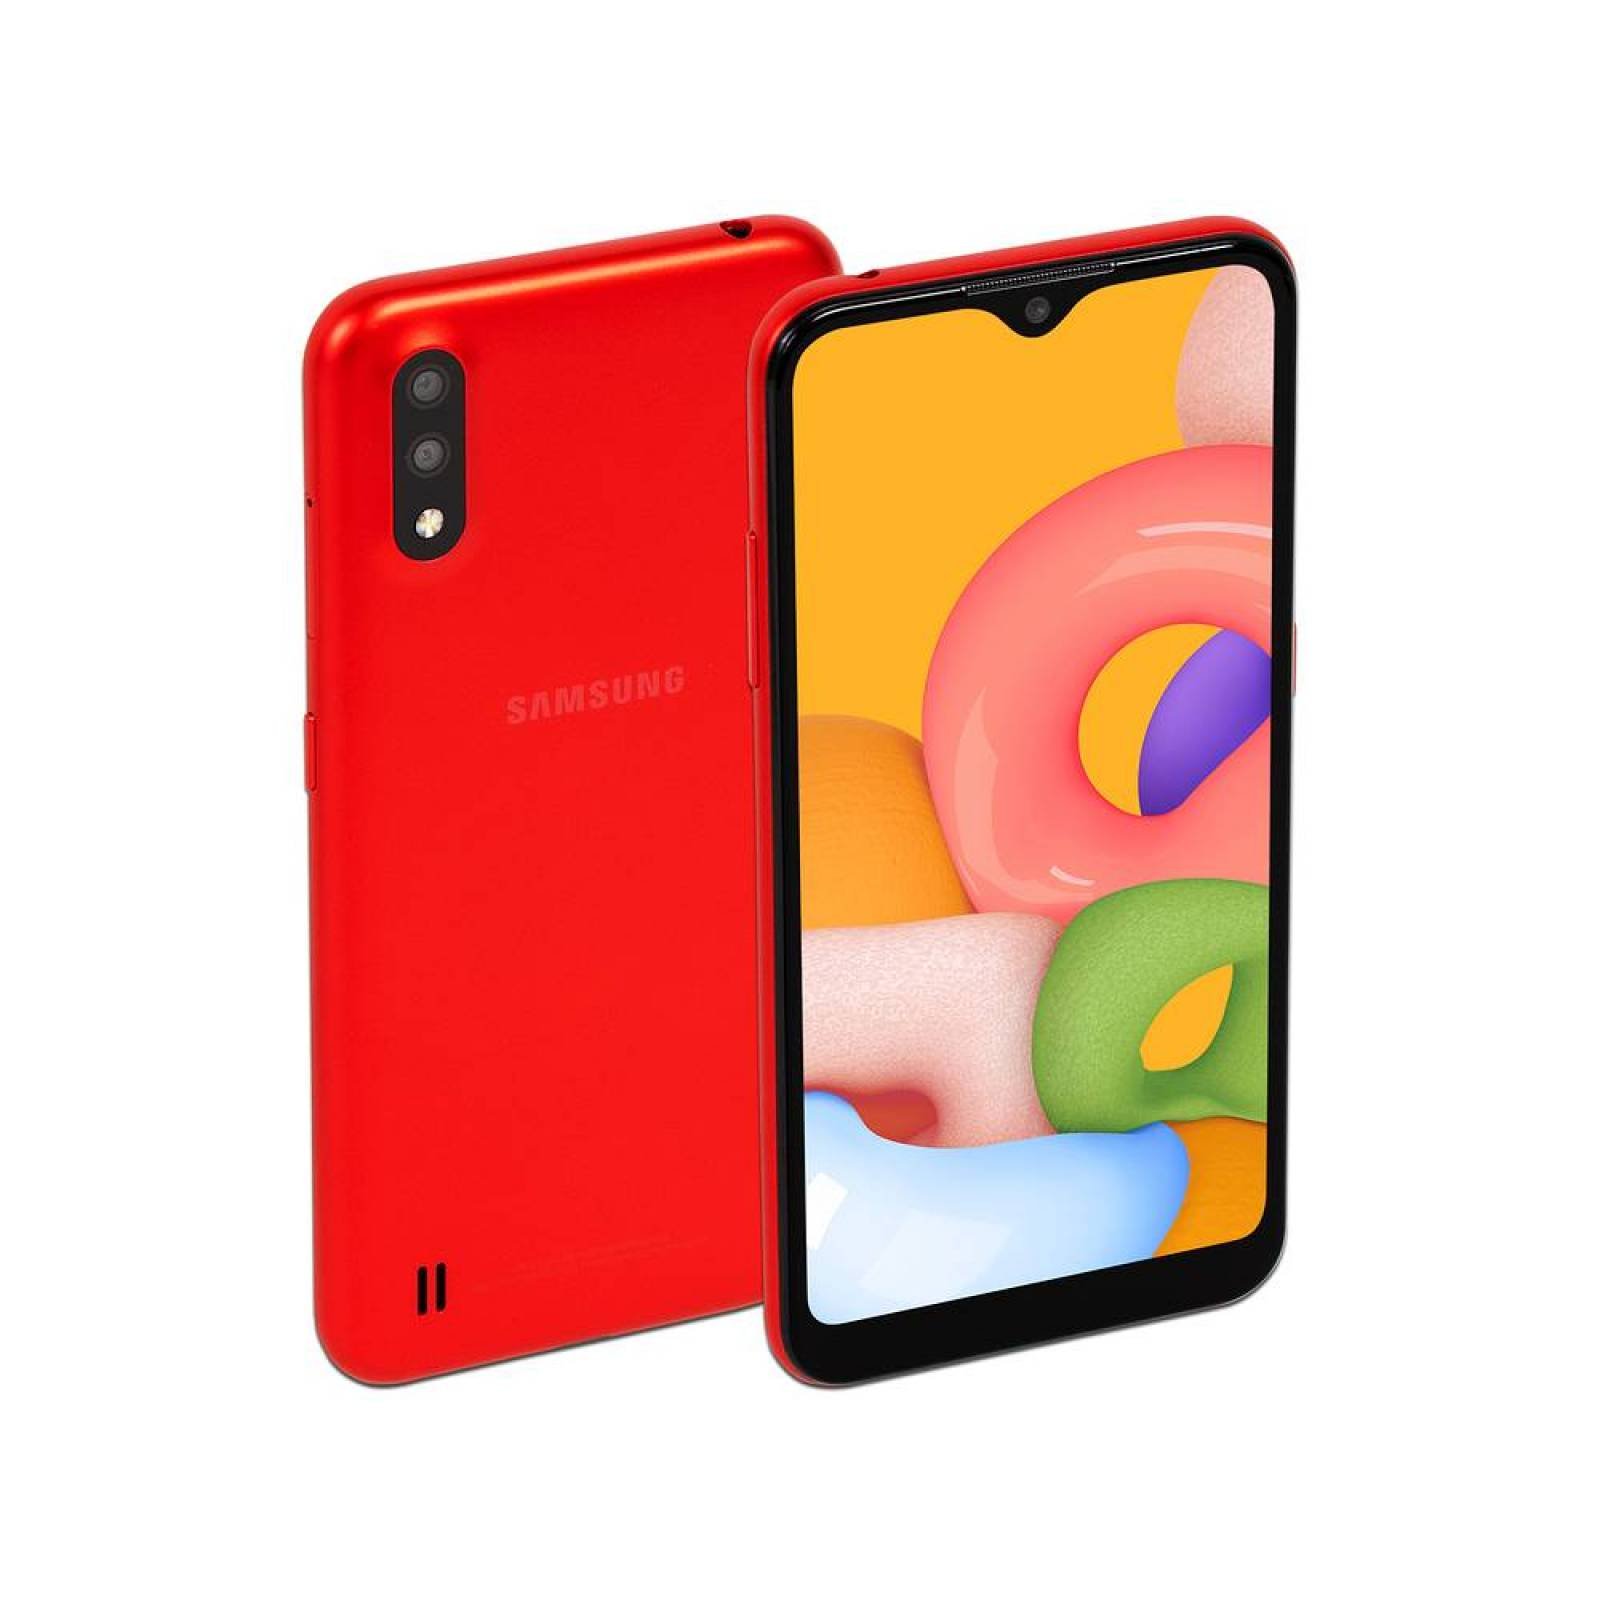 Smartphone Samsung Galaxy A01
 Procesador Octa core hasta 2.0GHz
 Memoria RAM de 2GB Almacenamiento de 16GB
 Pantalla LED Multi Touch de 5.6 pulgadas HD+
 Bluetooth 4.2 Wi-Fi
 Android 9.0 Color Rojo.